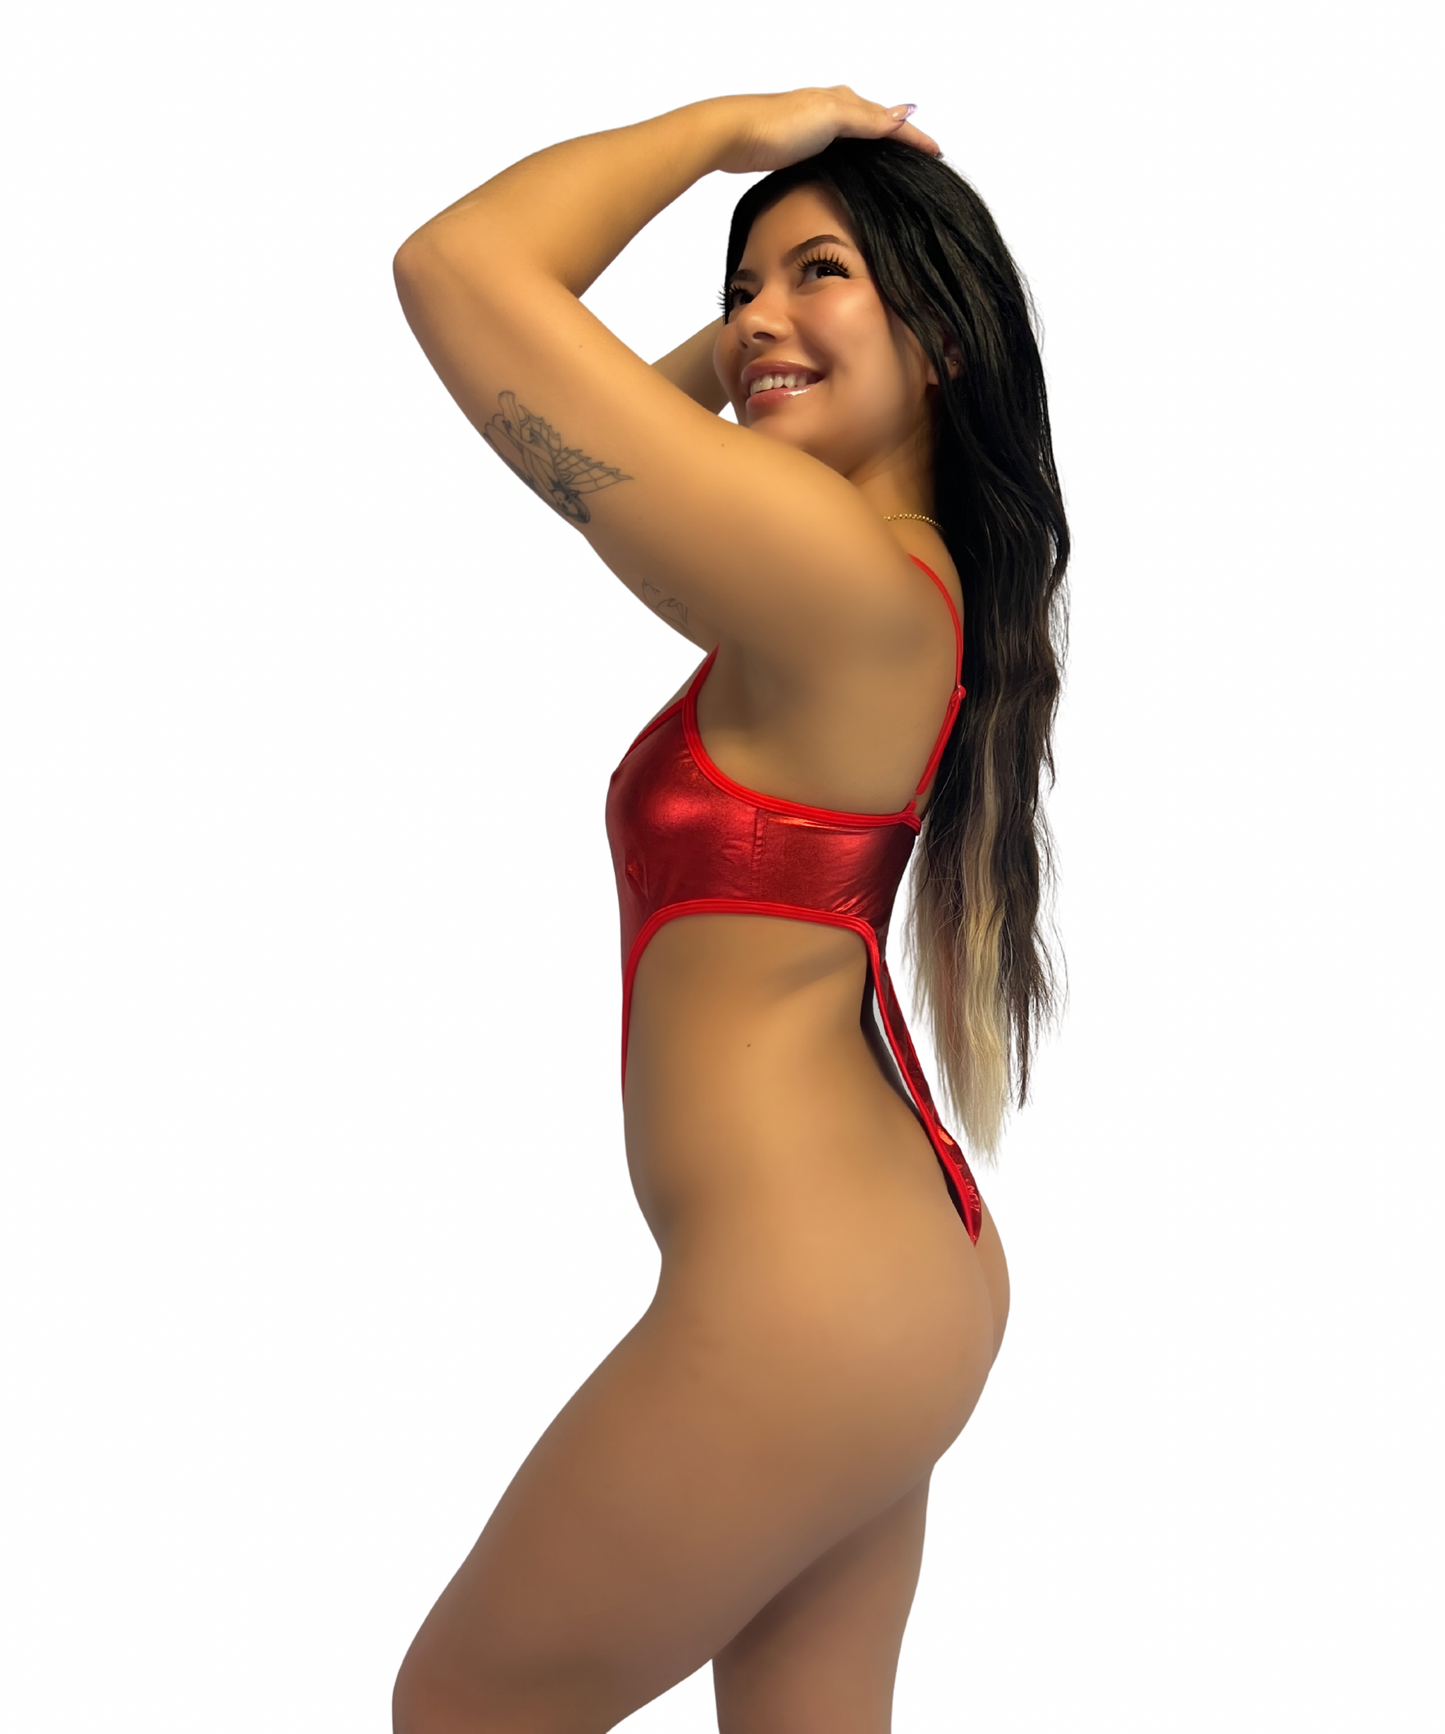 Sassy Red Metallic Monokini Stripper Outfit